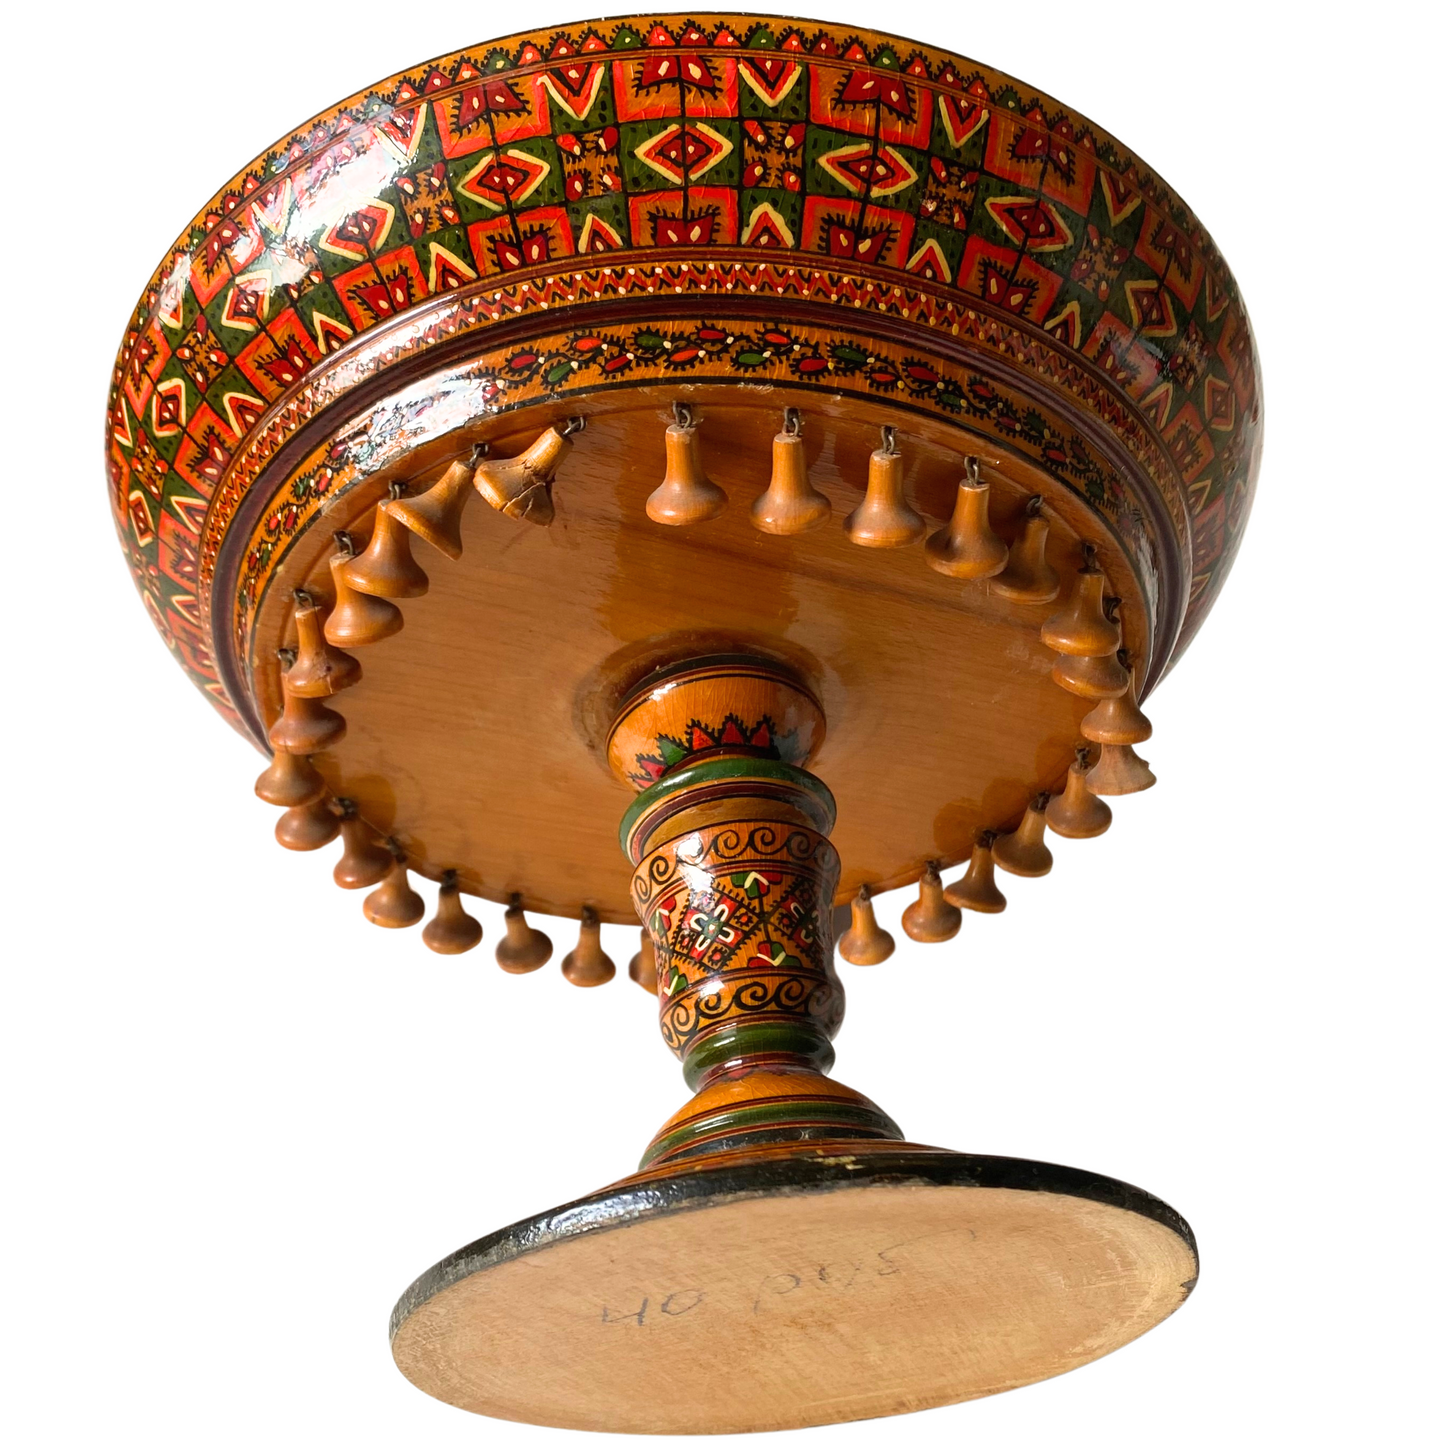 Vintage Wooden Bowl with Pedestal